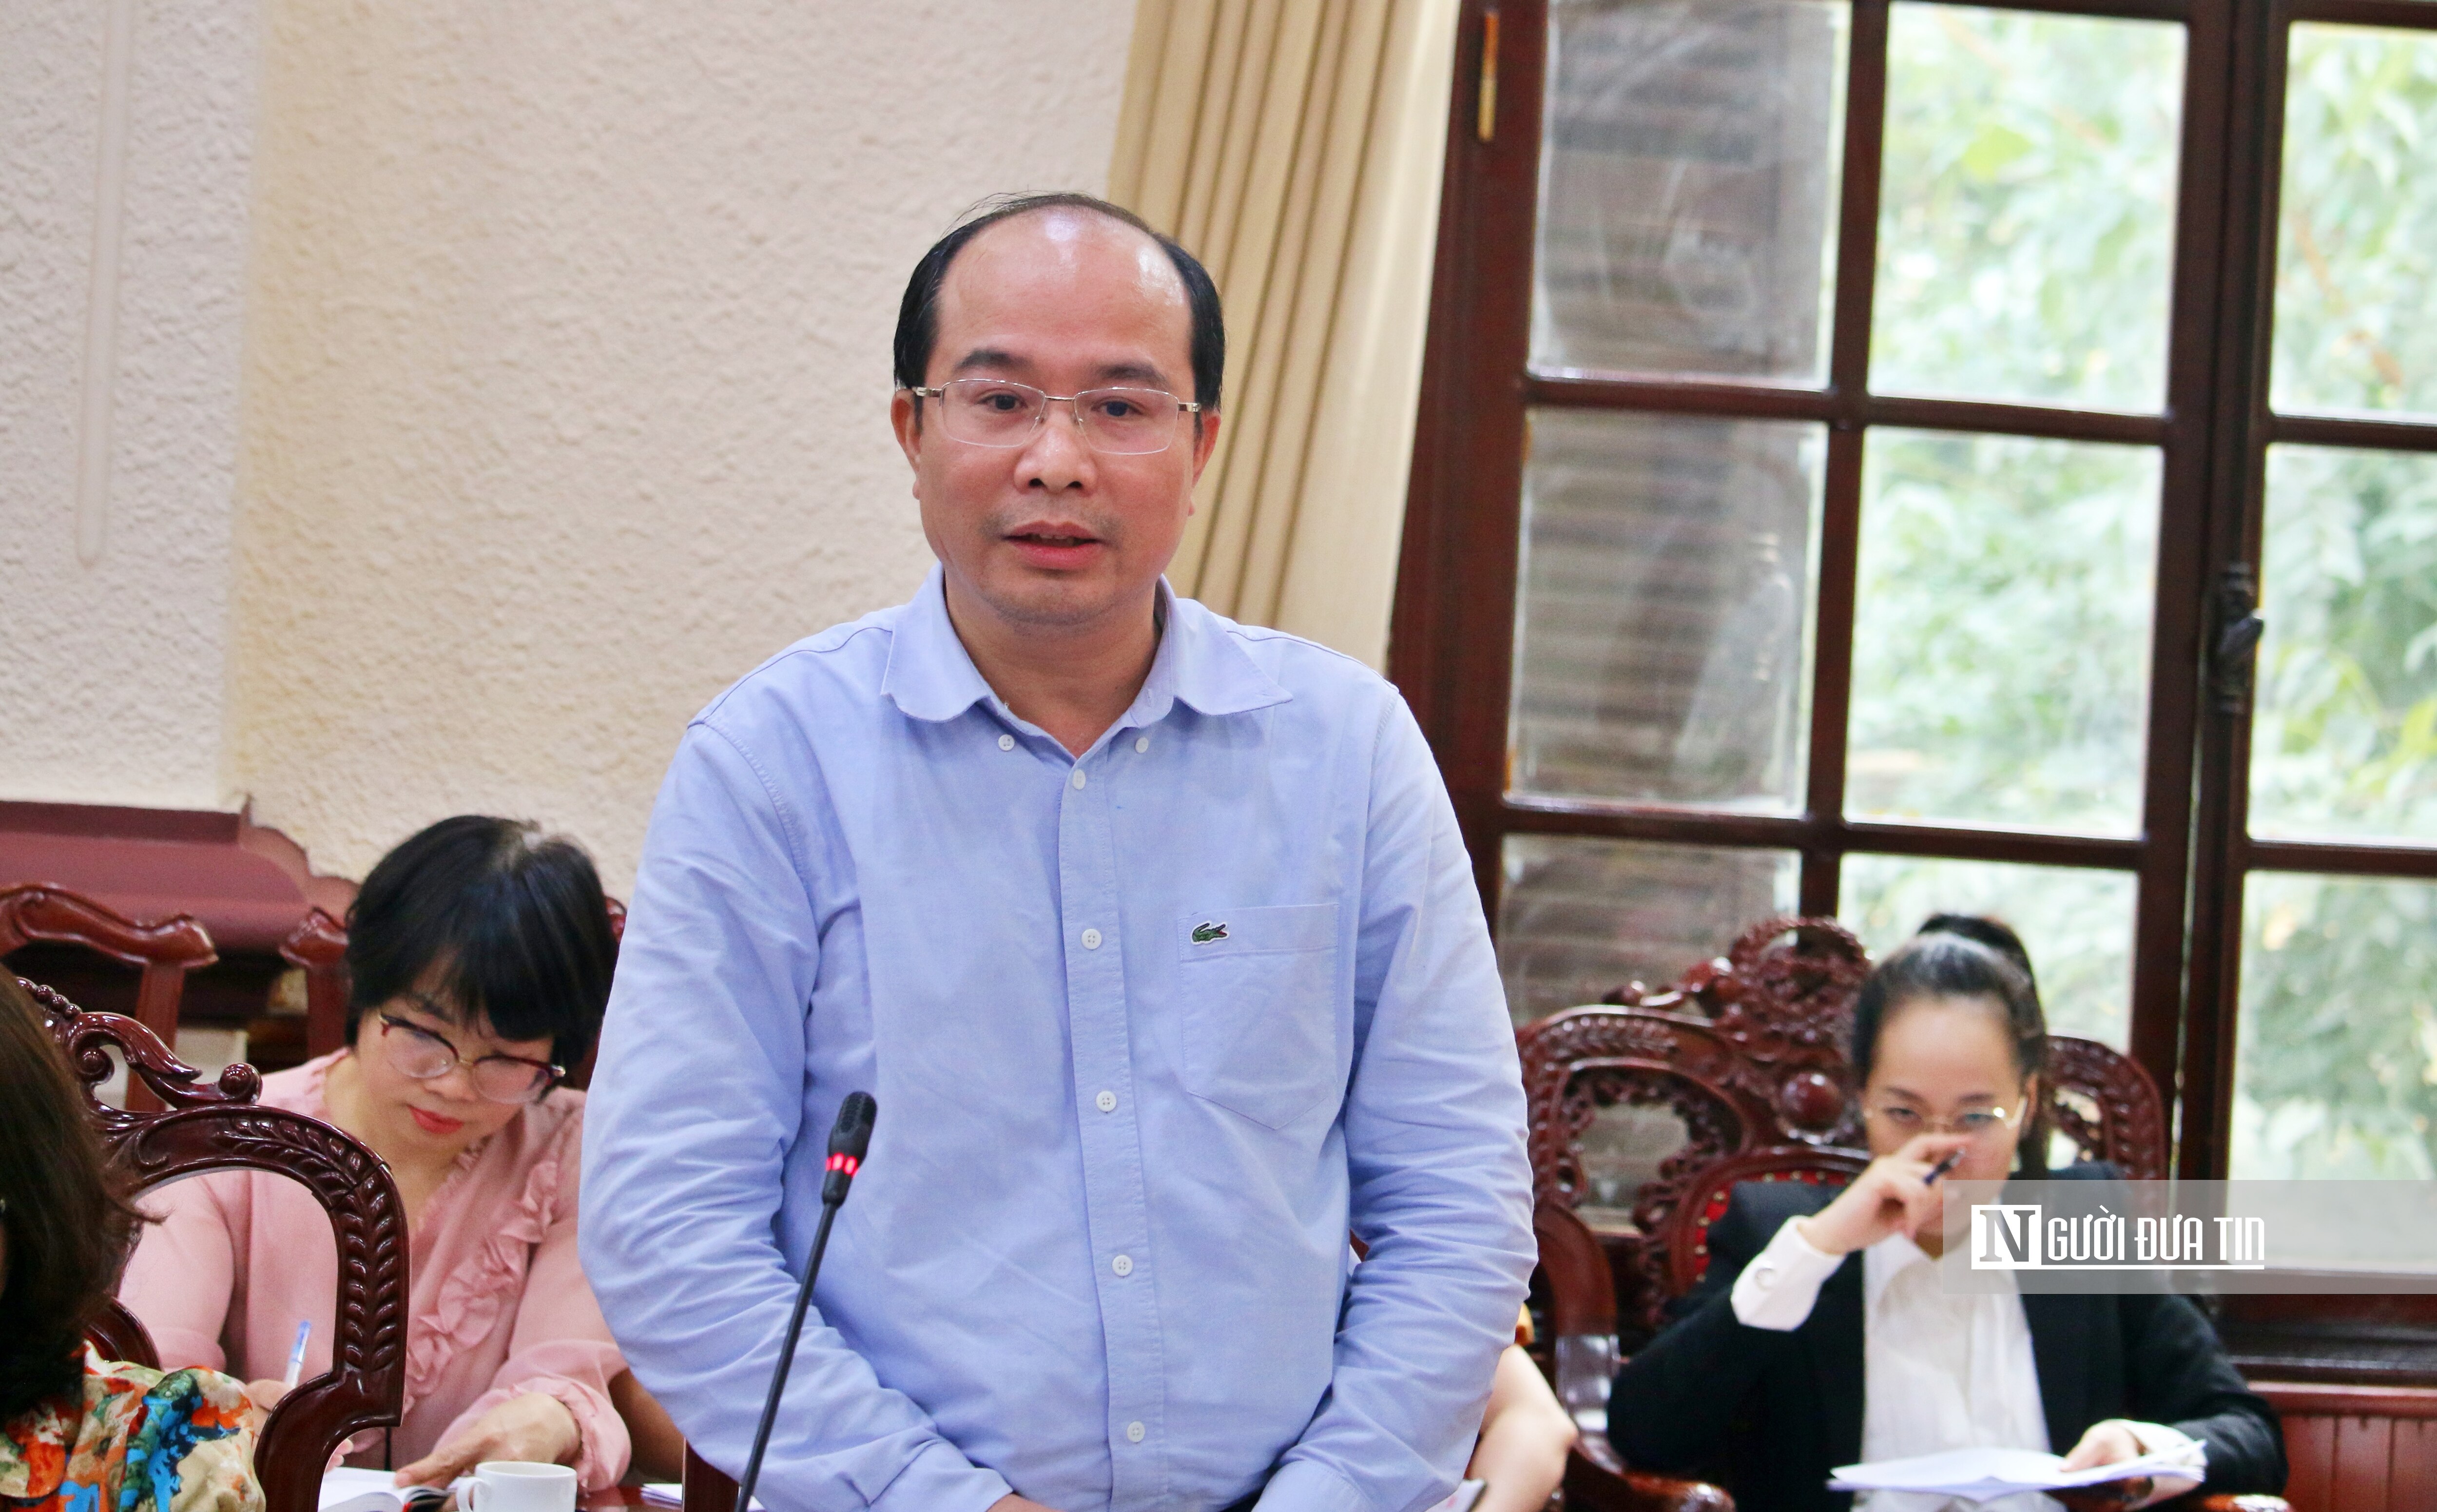 Chính sách - Xây dựng kế hoạch đảm bảo thu hồi tài sản vụ án Trương Mỹ Lan